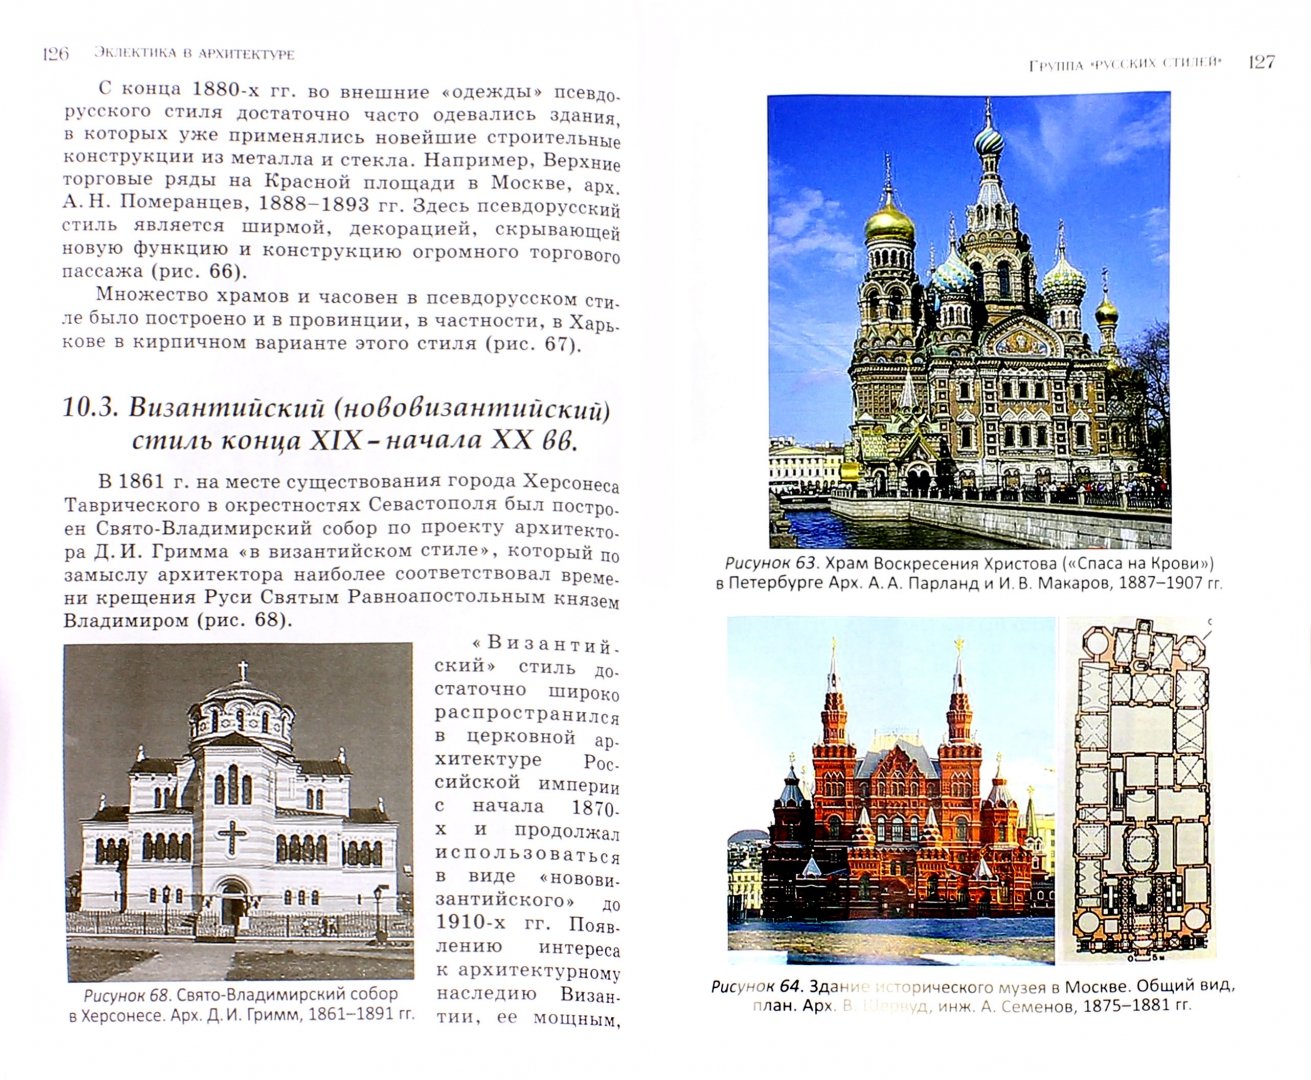 Иллюстрация 1 из 8 для Эклектика в архитектуре - Давидич, Качемцева | Лабиринт - книги. Источник: Лабиринт